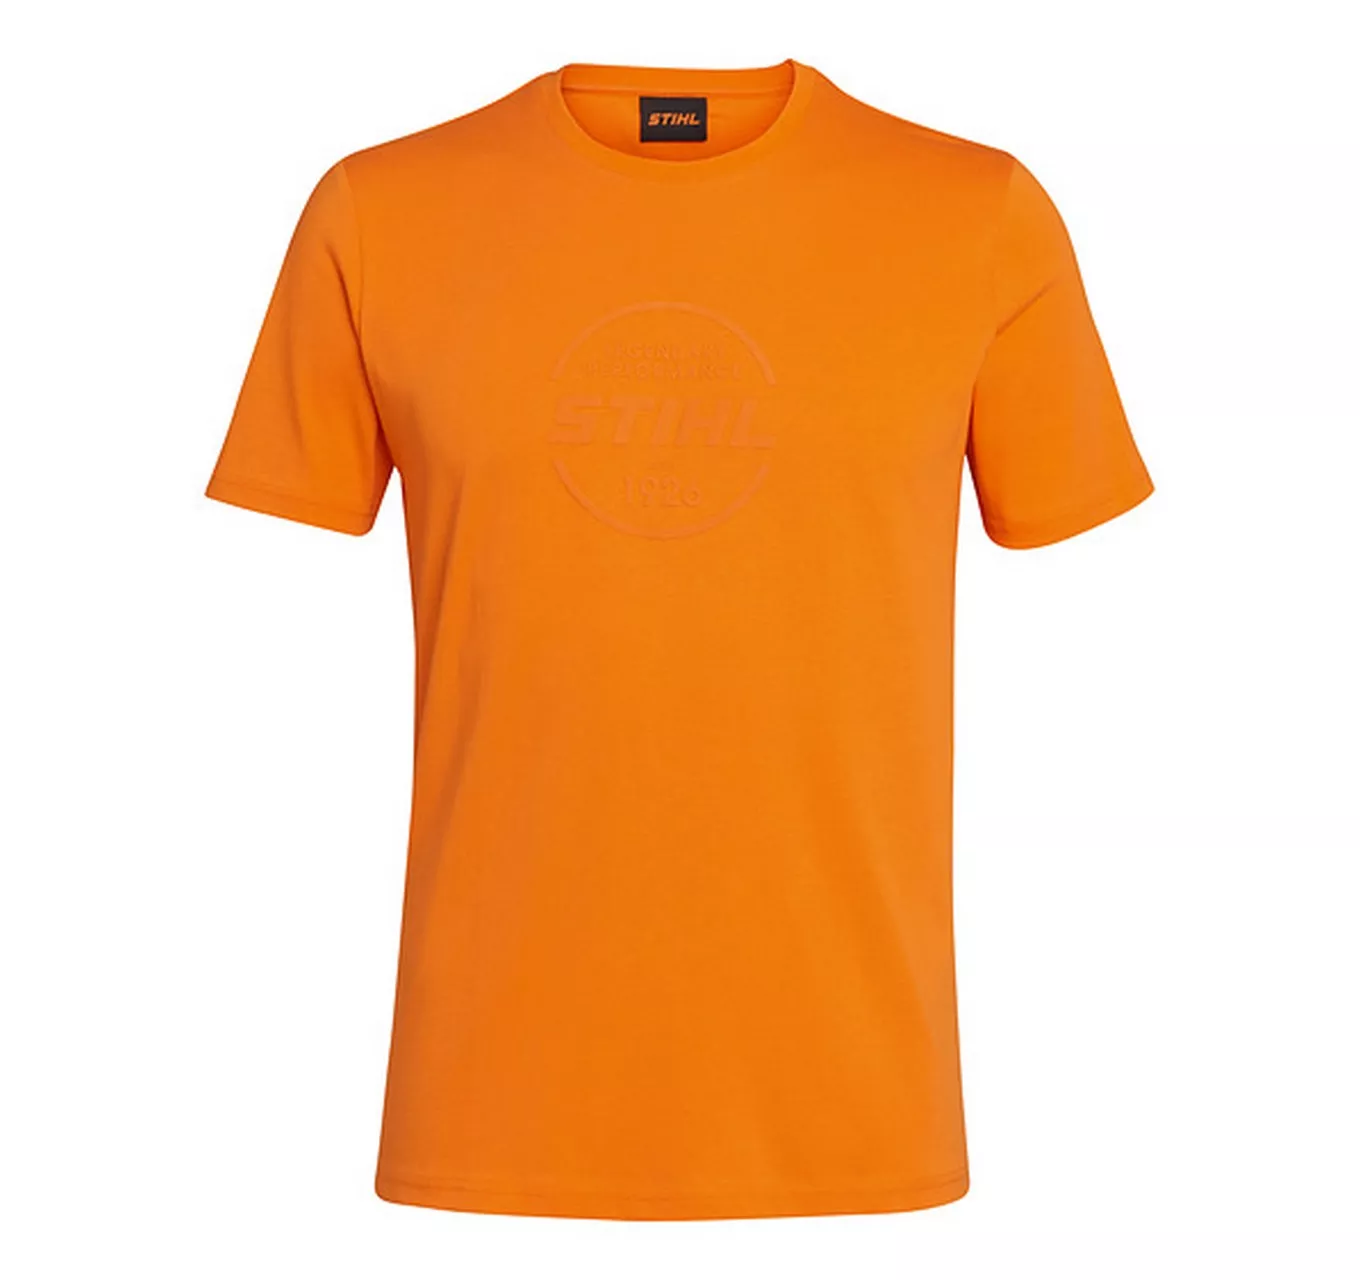 LOGO-CIRCLE Orange T-Shirt